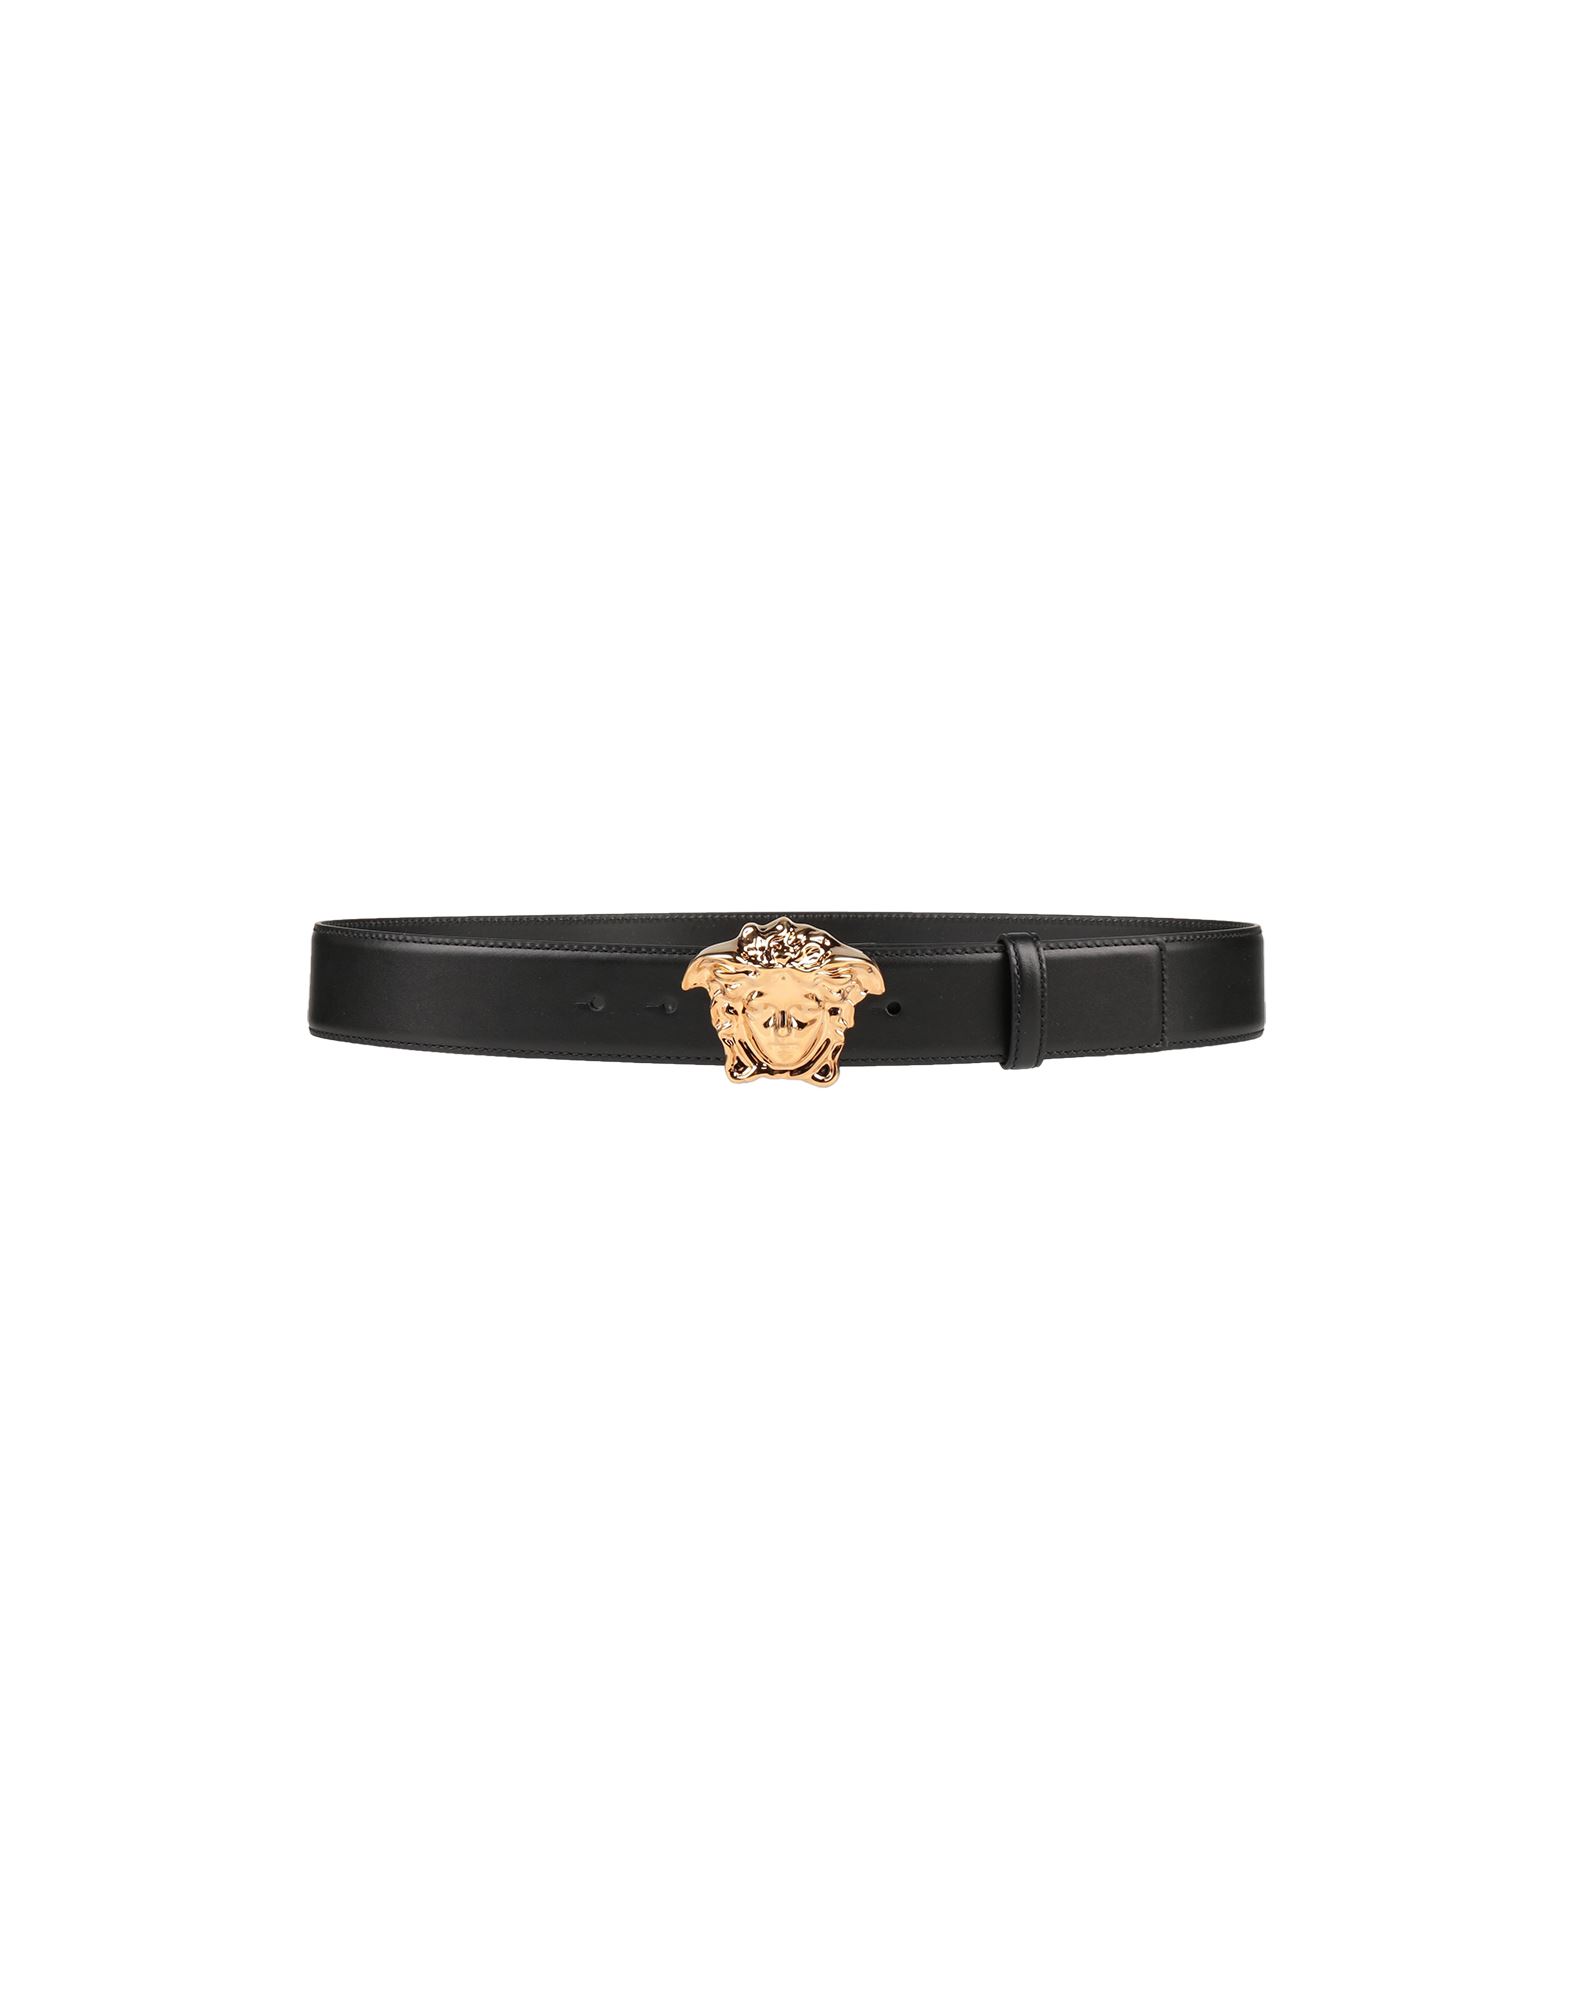 Shop Versace Man Belt Black Size 36 Calfskin